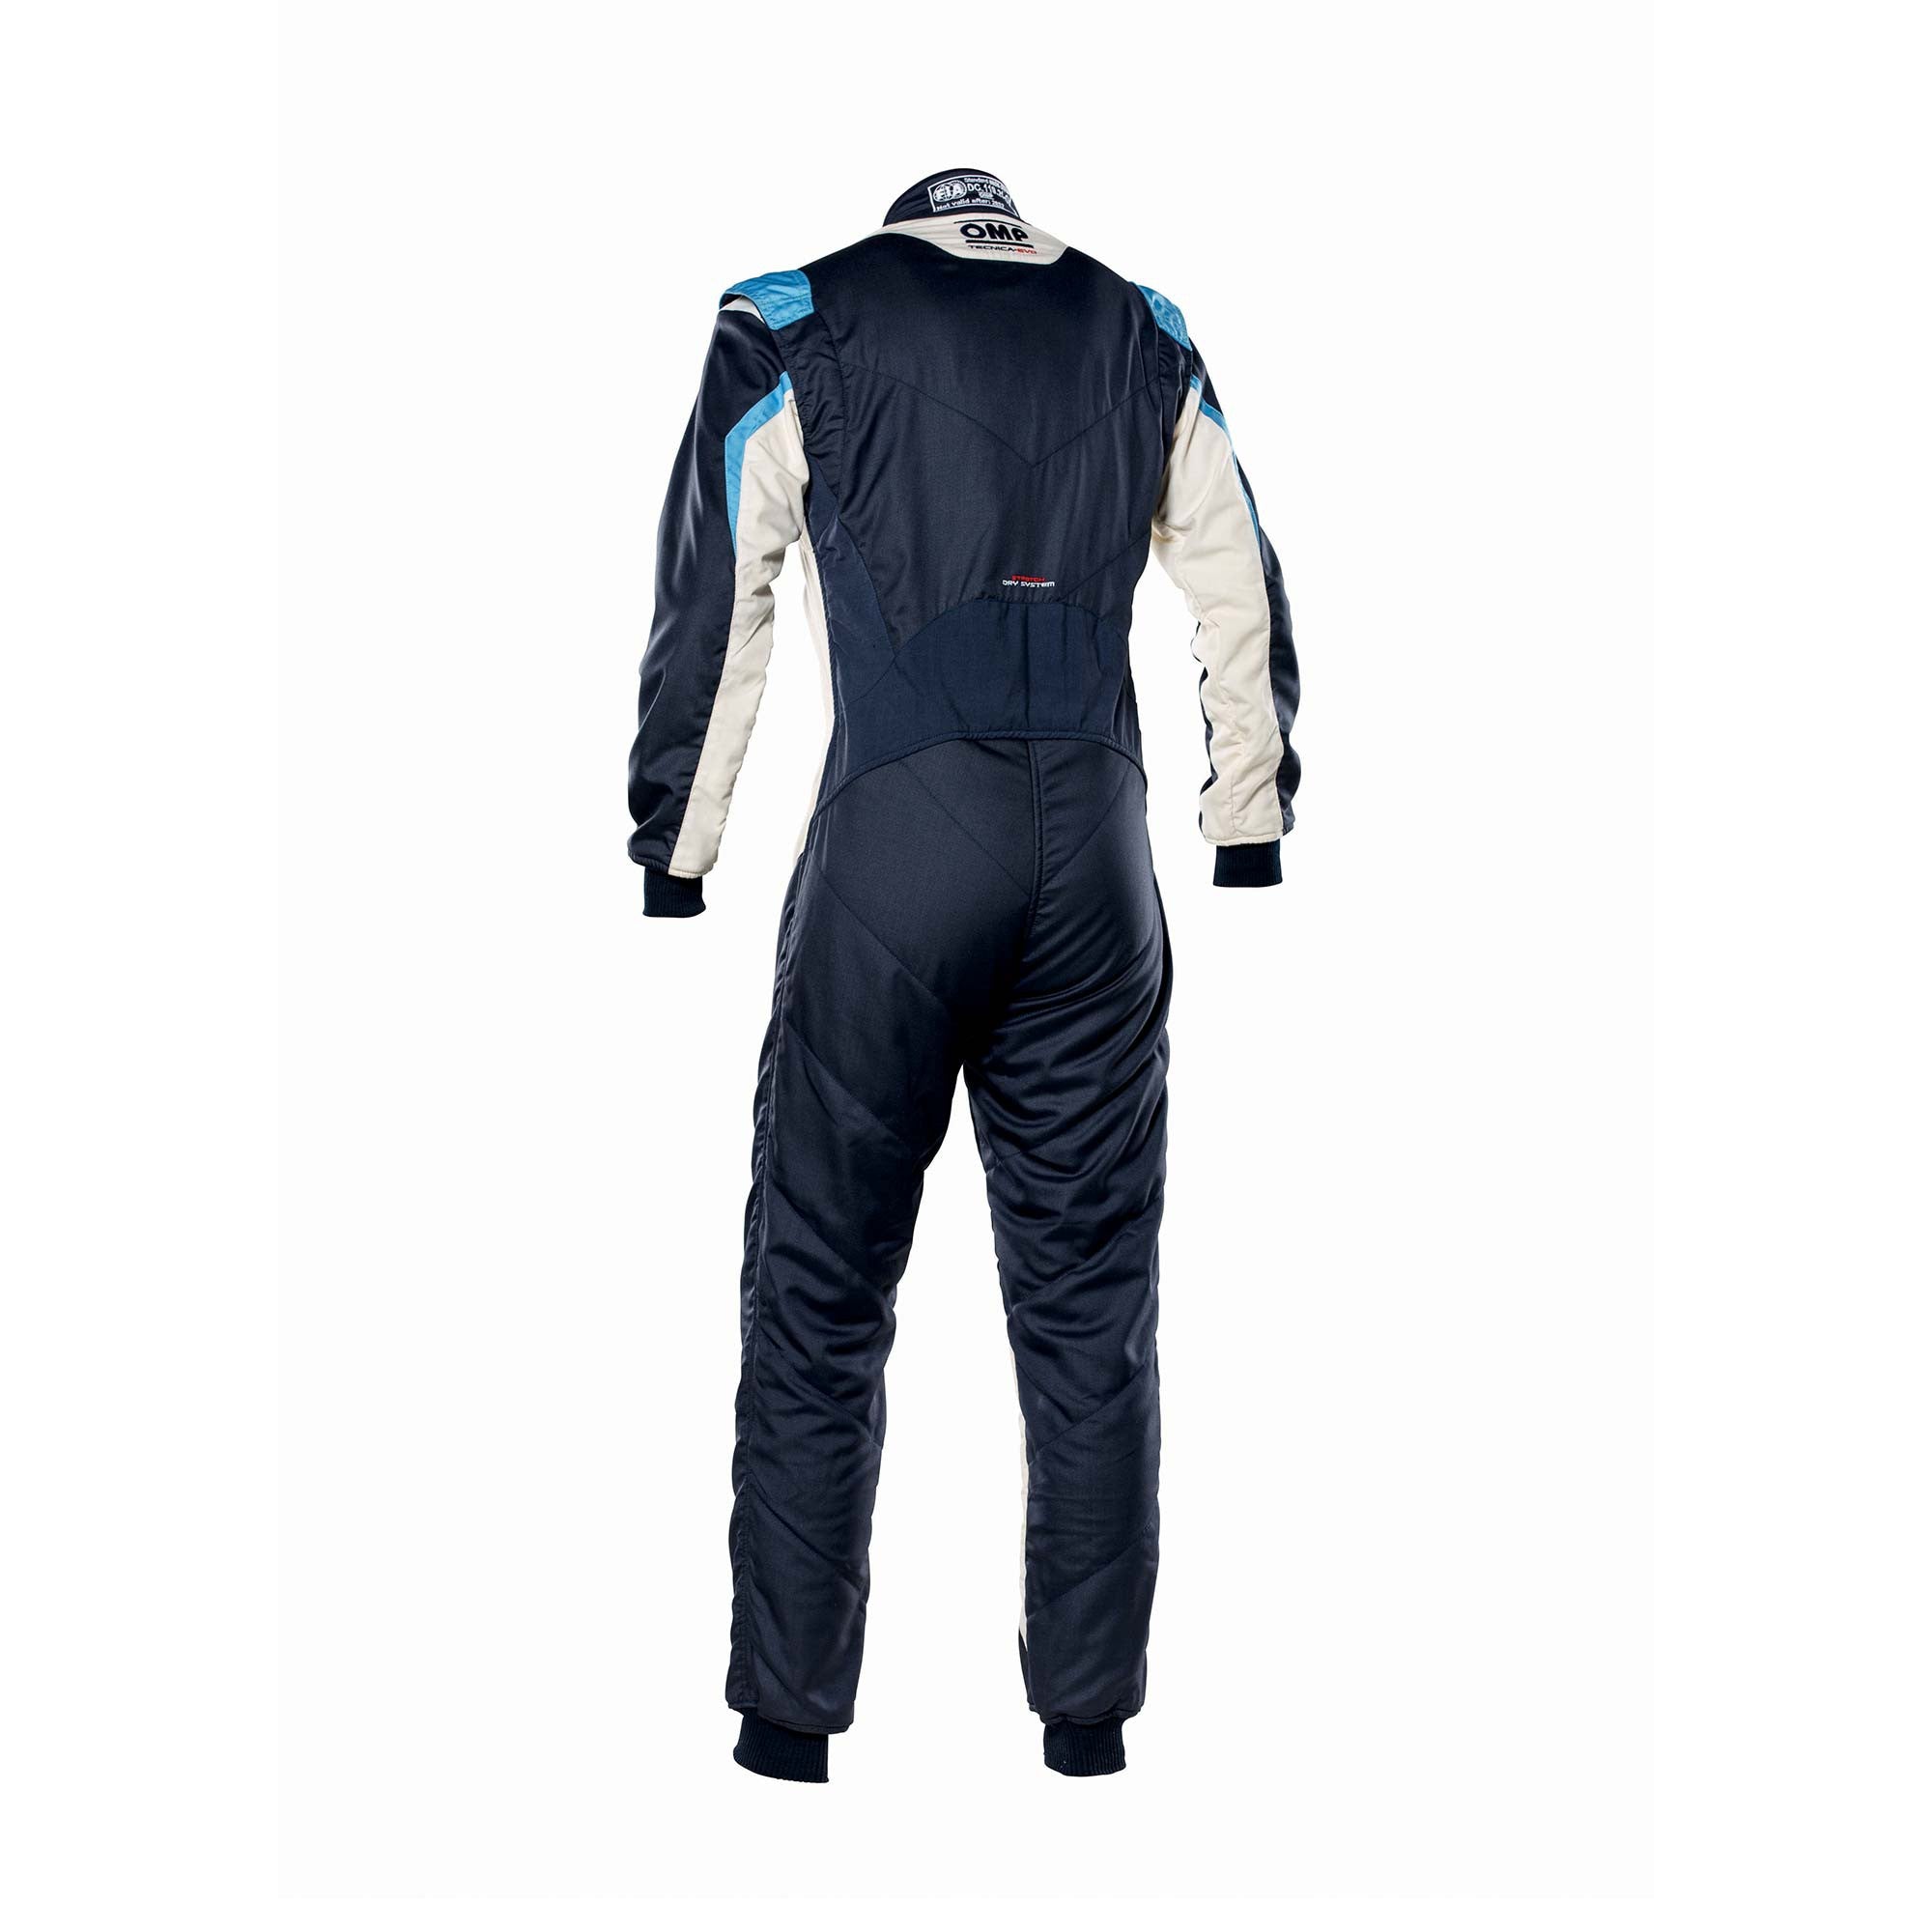 OMP IA0-1859-B01-246-50 Racing suit TECNICA EVO MY2021, FIA 8856-2018, navy blue/white/grey/cyan, size 50 Photo-1 